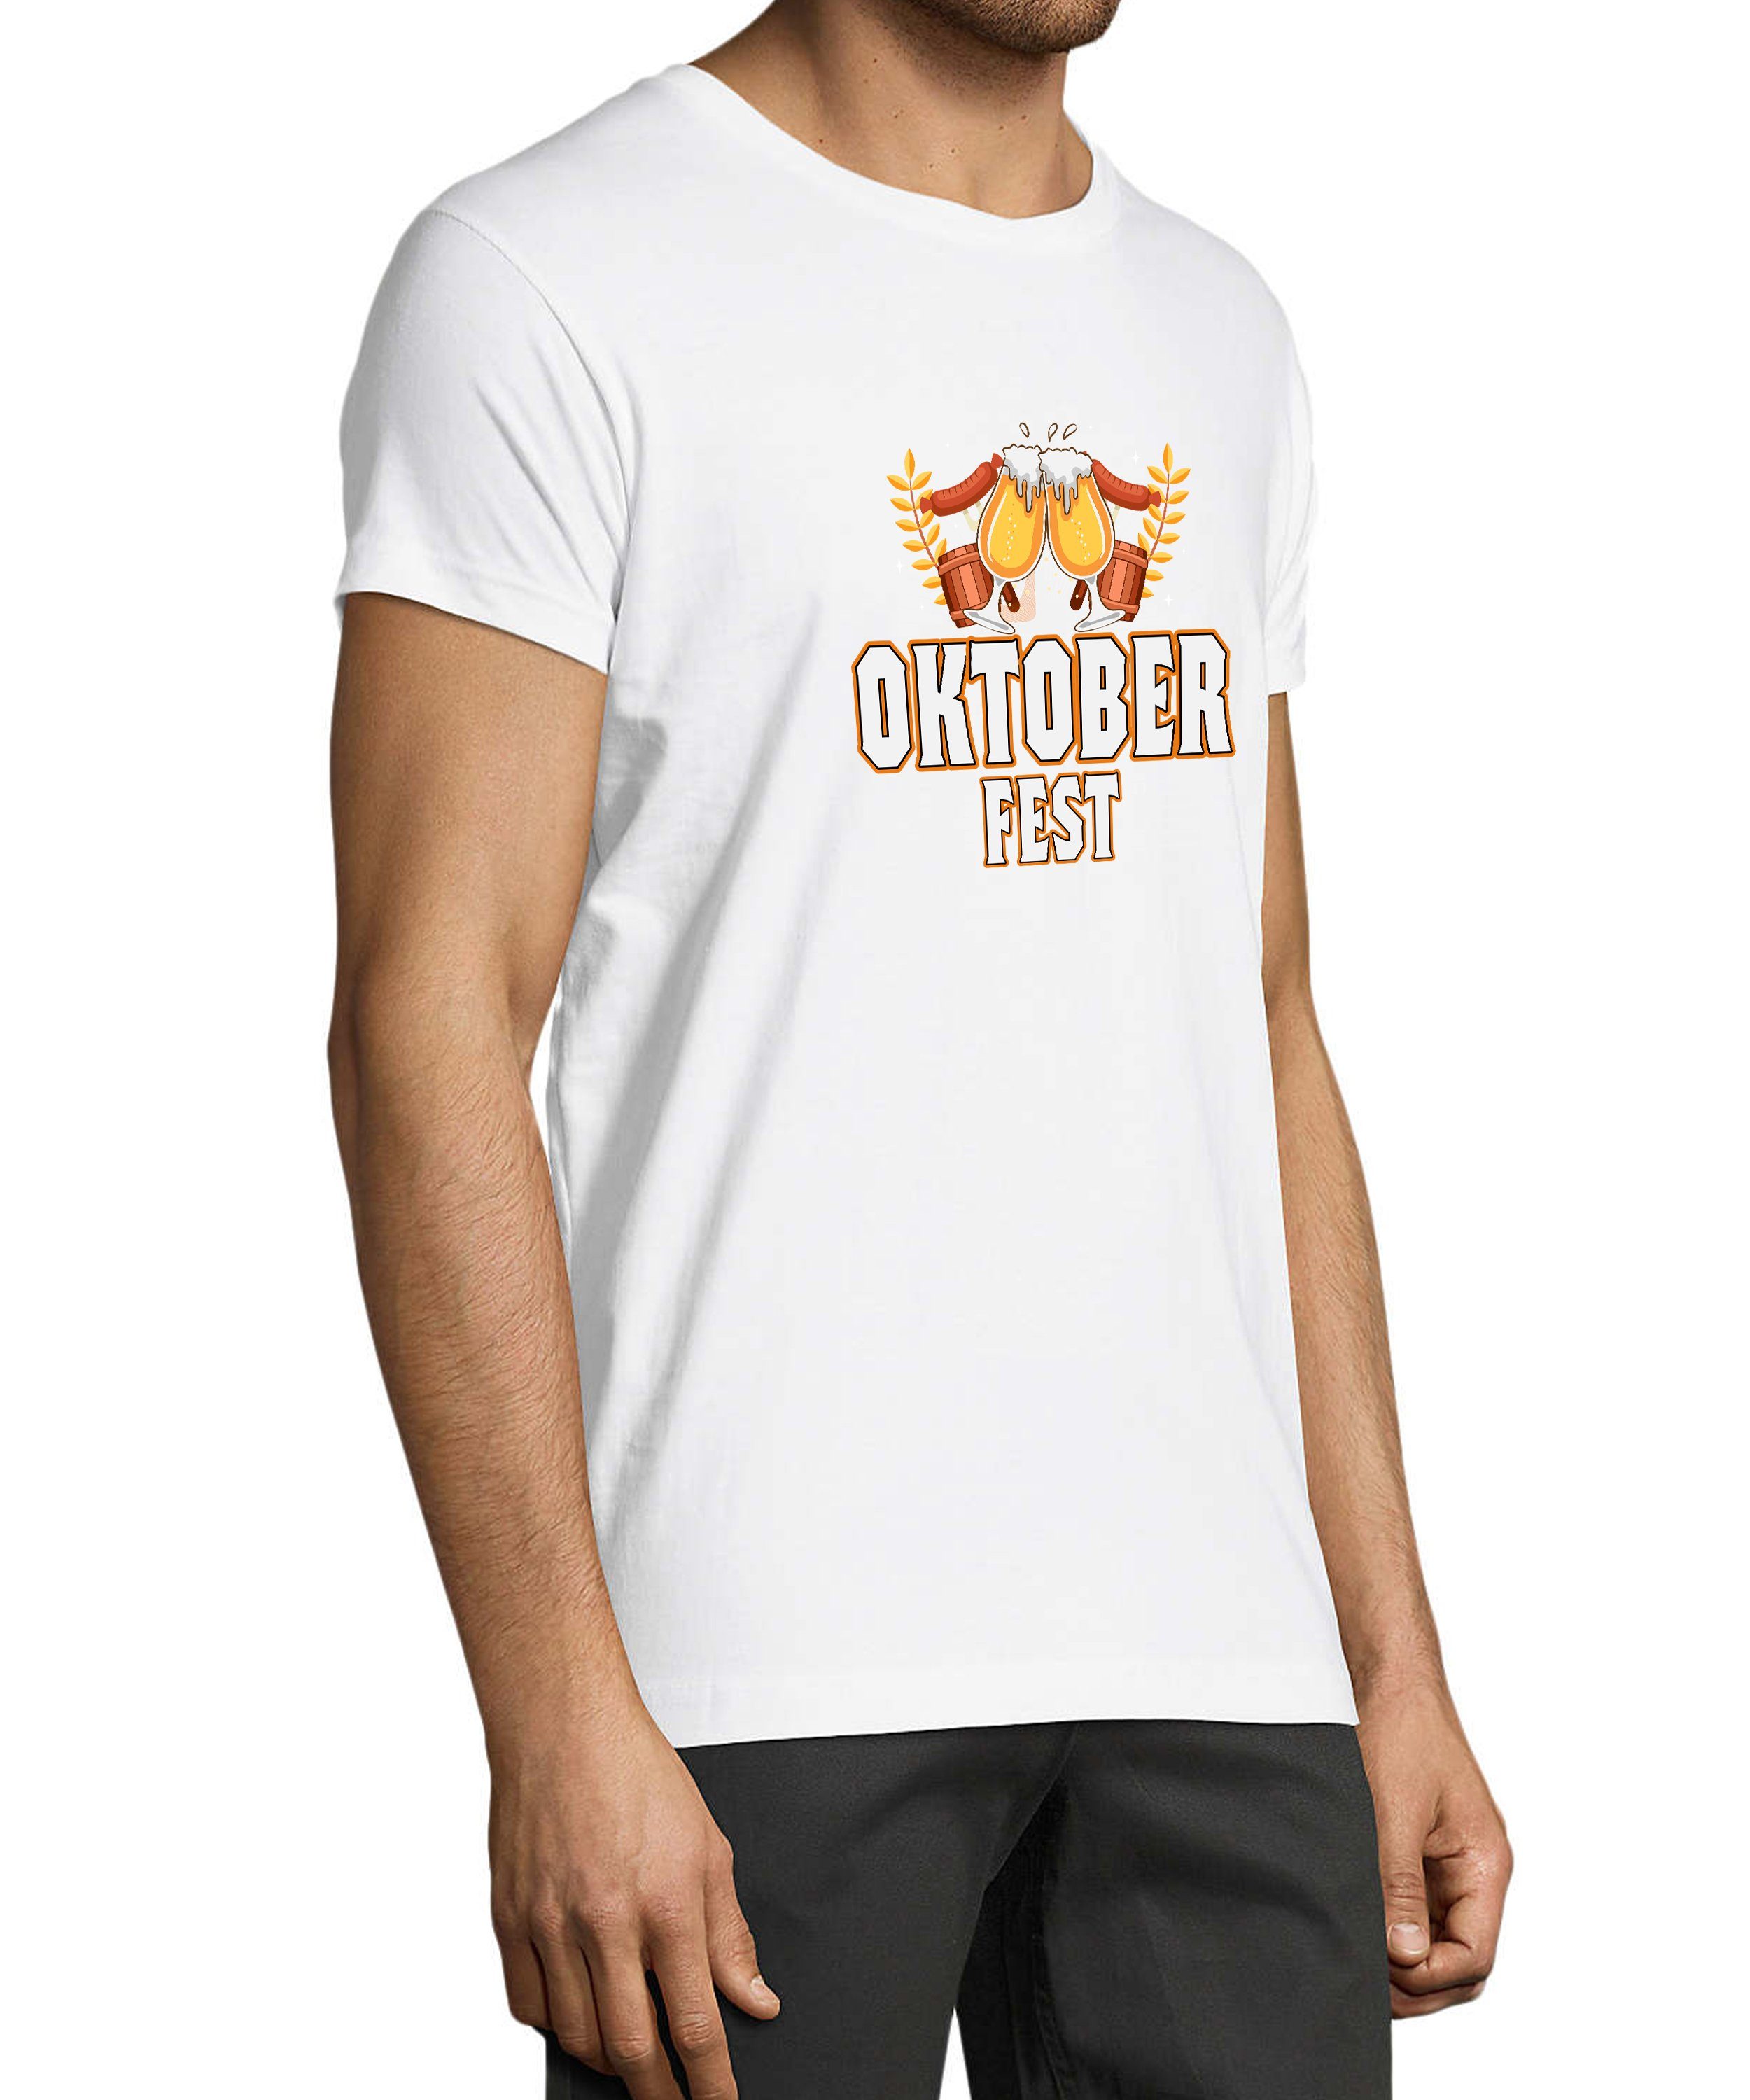 T-Shirt Fit, Regular Shirt Herren Oktoberfest MyDesign24 i327 Baumwollshirt - Aufdruck T-Shirt Party mit weiss